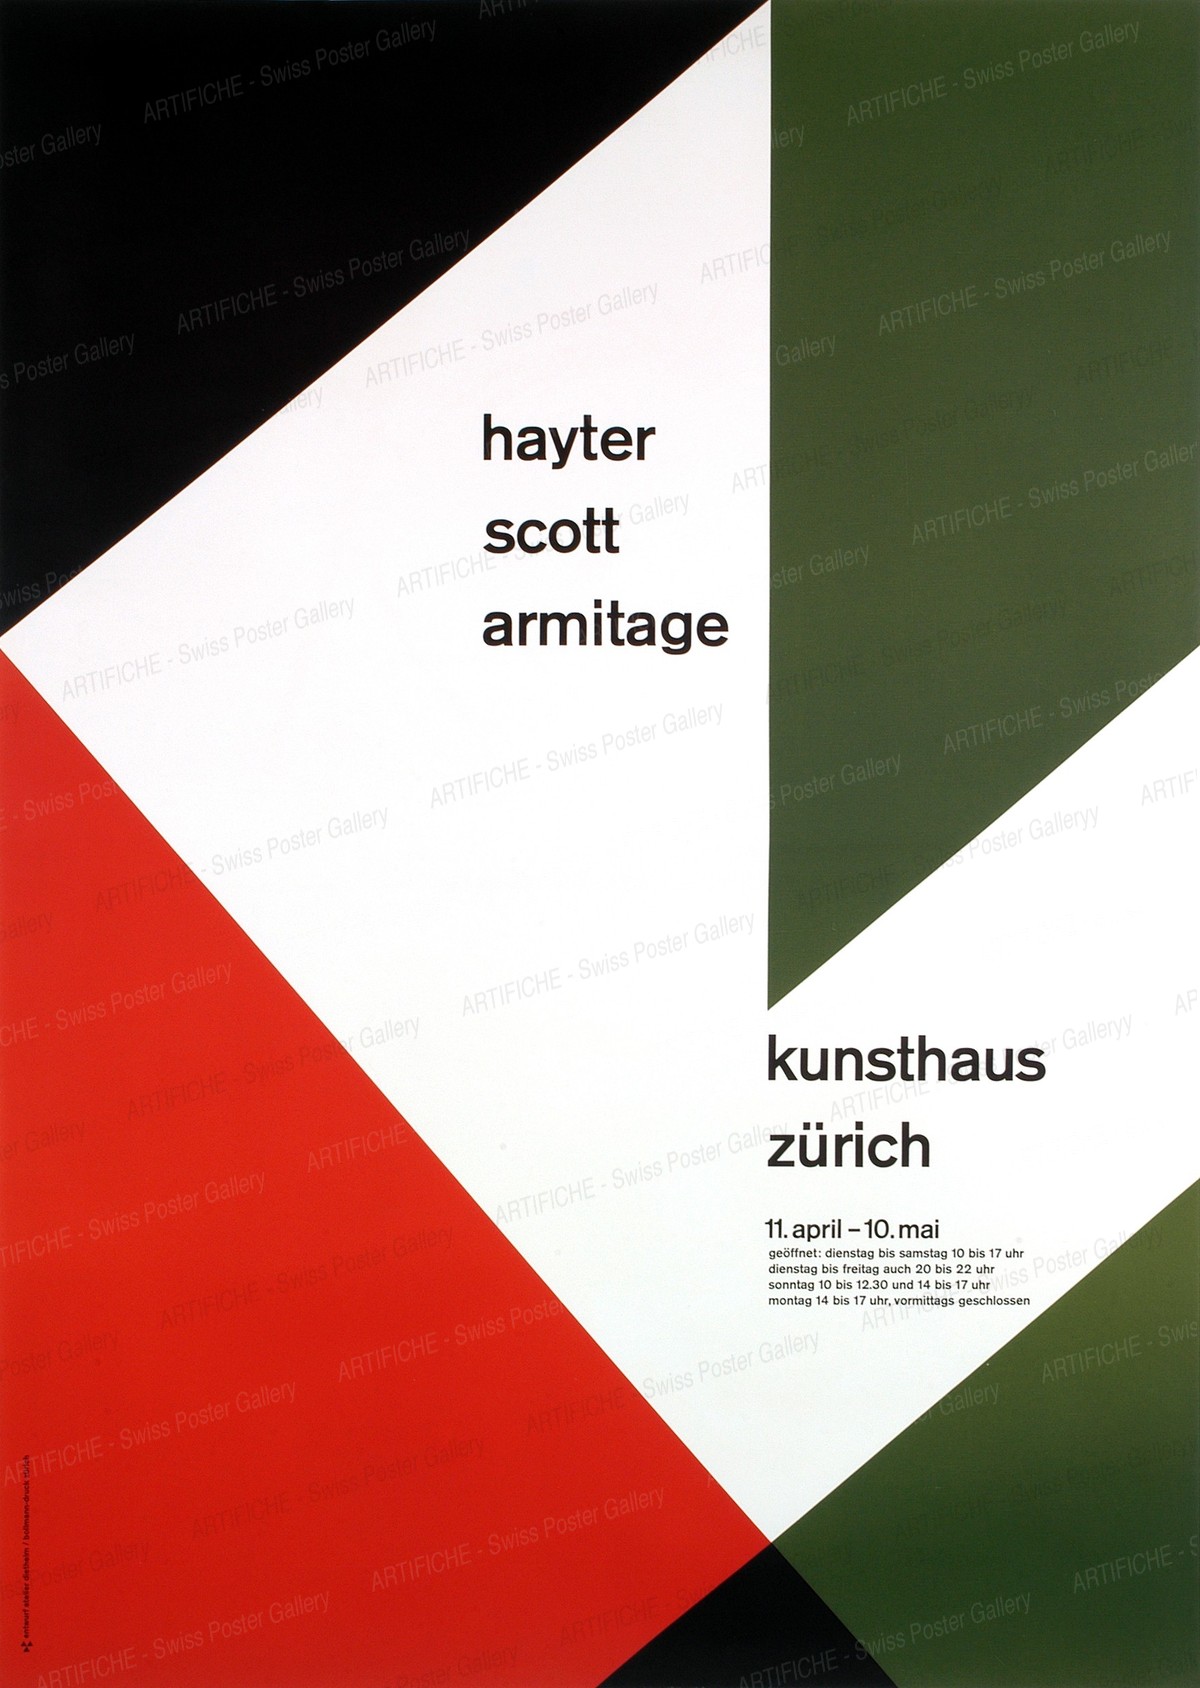 Zurich Museum of Fine Arts – Hayter Scott Armitage, Walter Diethelm